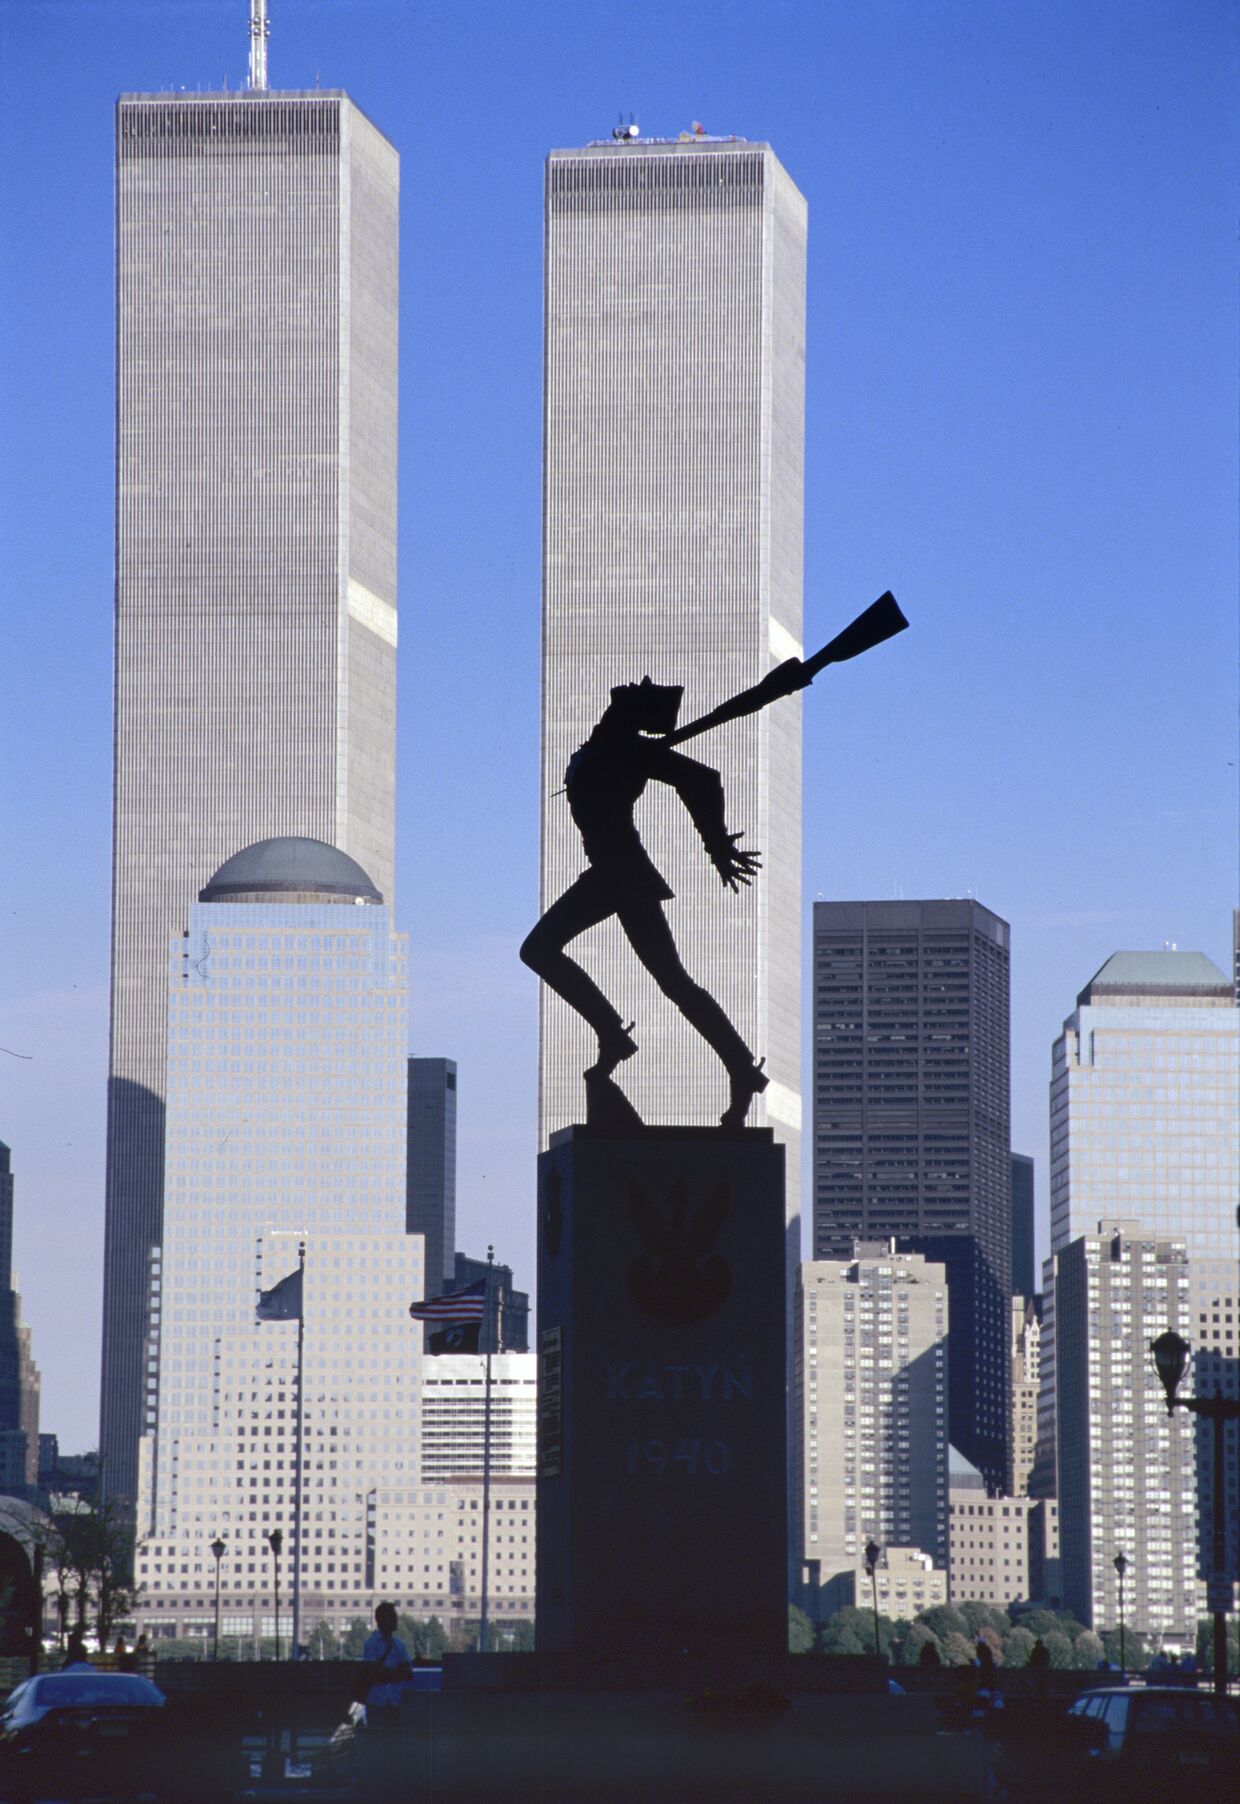 Памятник жертвам Катыни в Нью-Йорке